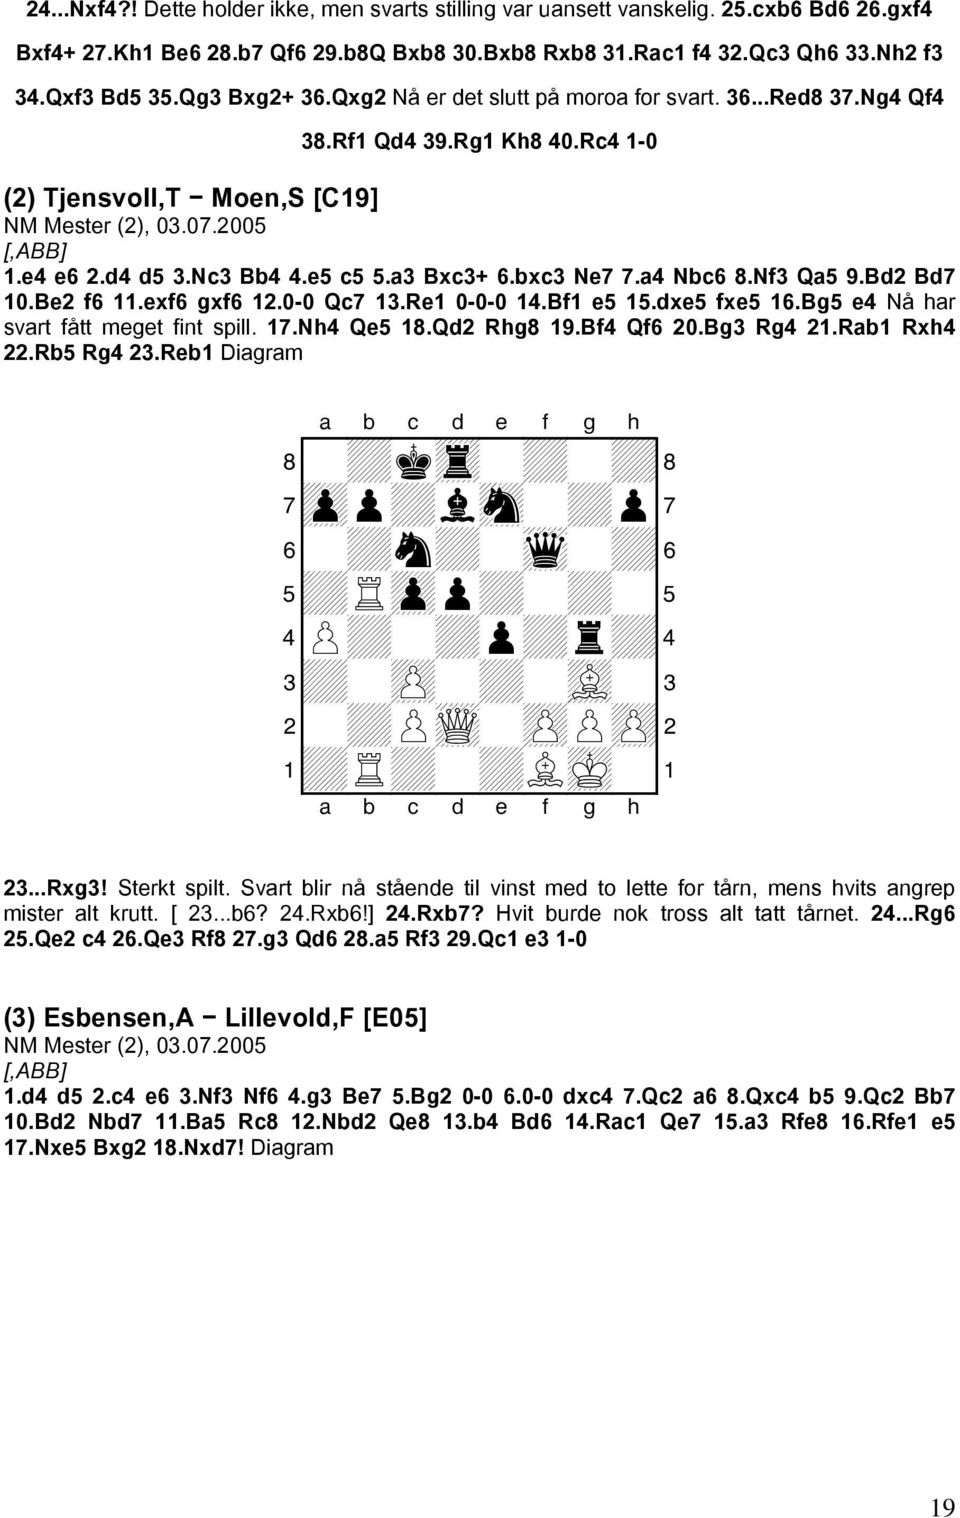 e5 c5 5.a3 Bxc3+ 6.bxc3 Ne7 7.a4 Nbc6 8.Nf3 Qa5 9.Bd2 Bd7 10.Be2 f6 11.exf6 gxf6 12.0-0 Qc7 13.Re1 0-0-0 14.Bf1 e5 15.dxe5 fxe5 16.Bg5 e4 Nå har svart fått meget fint spill. 17.Nh4 Qe5 18.Qd2 Rhg8 19.